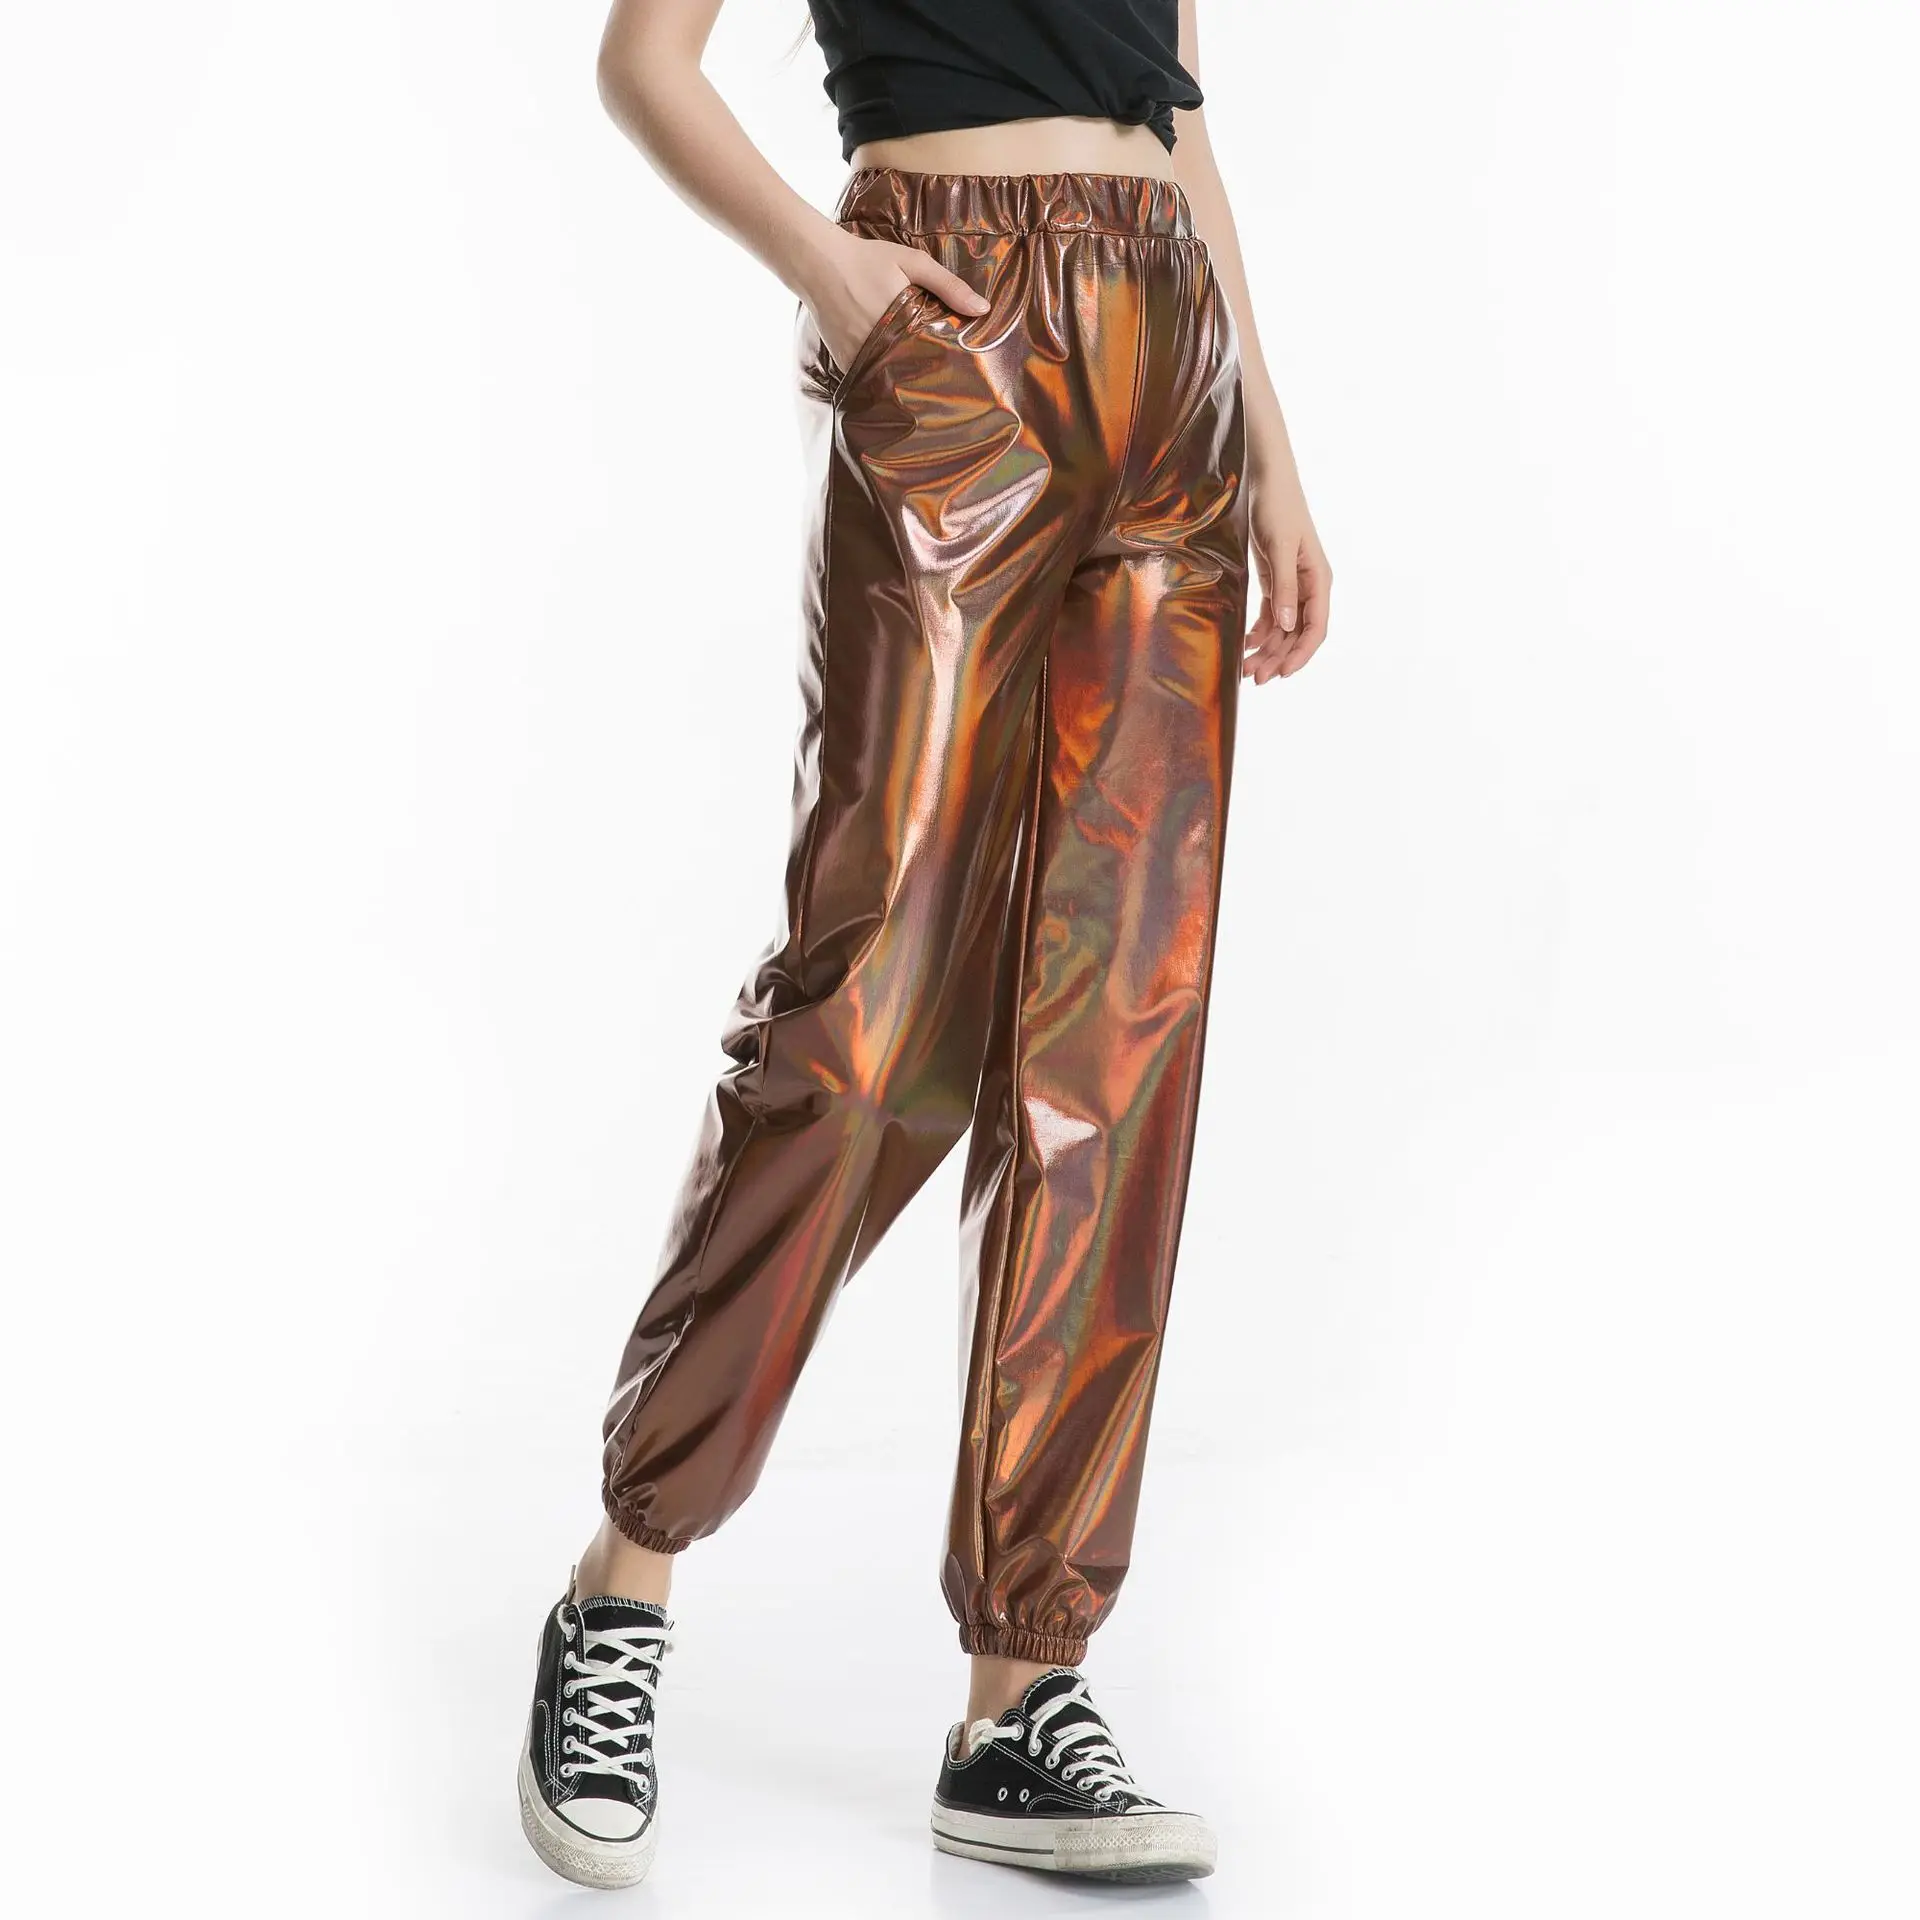 Хоучжоу спортивные штаны женские голографические брюки уличная хип-хоп повседневные брюки с высокой талией женские брюки хиппи больших размеров - Цвет: Dark Brown